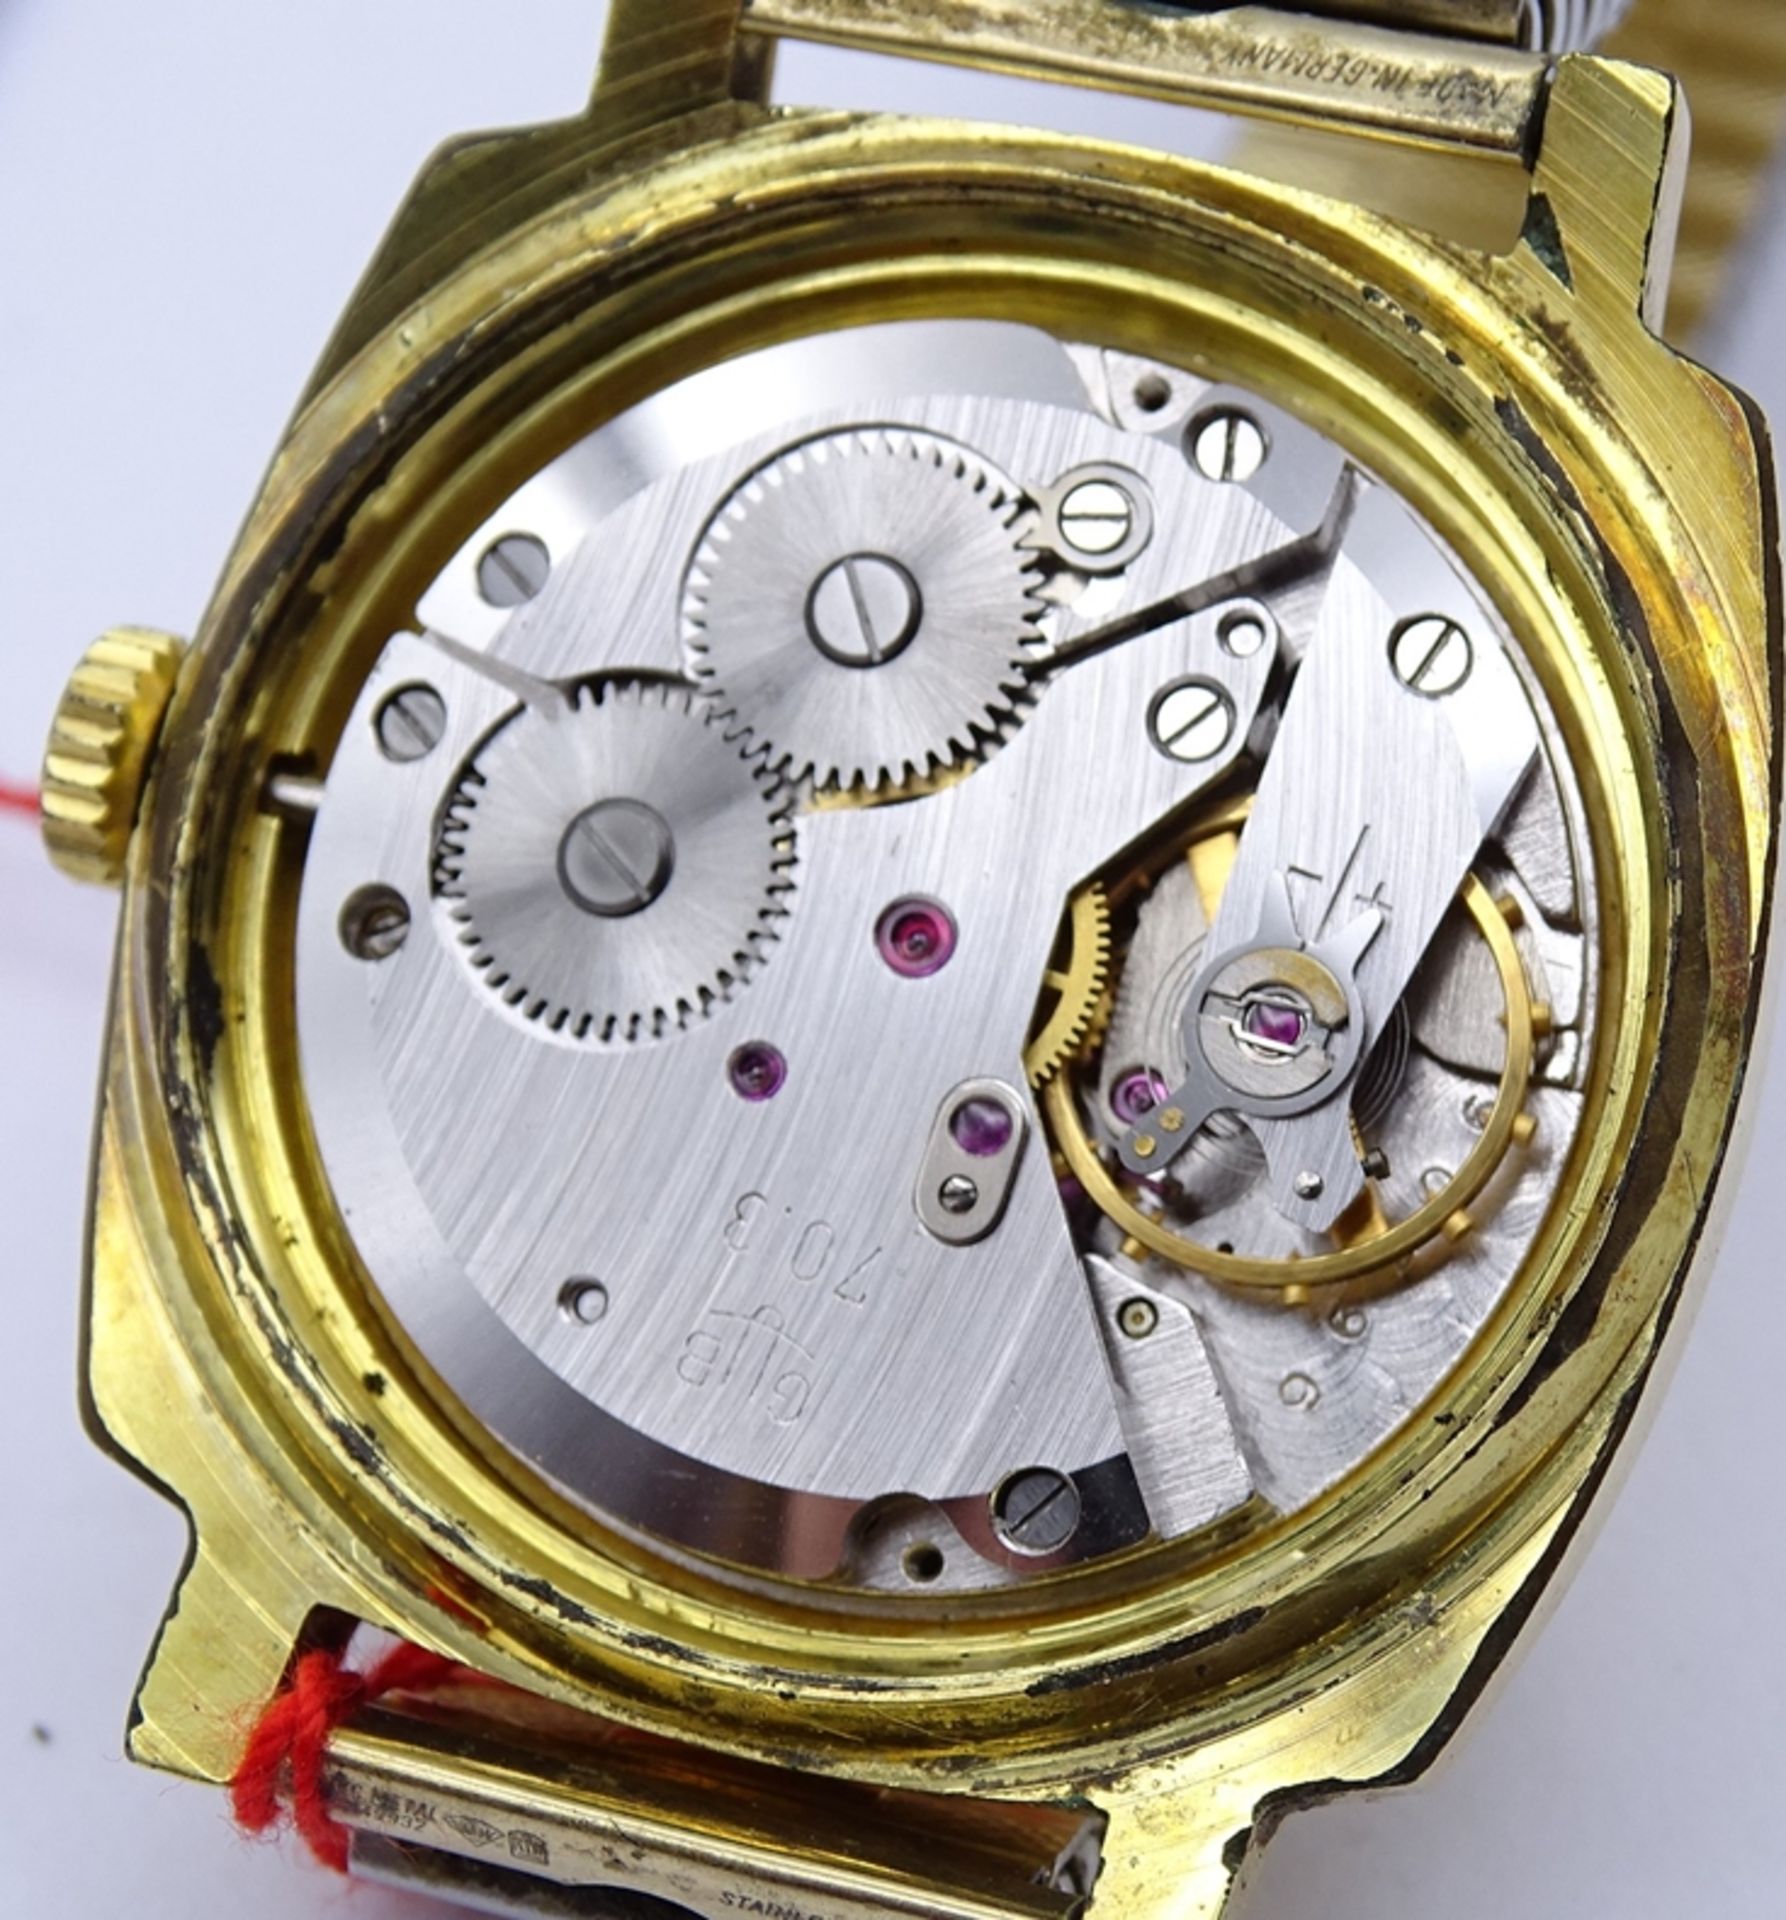 Herren Armbanduhr "Glashütte", Q1, Chronometer,Cal. 70.3 mechanisch, Werk läuft, Gehäuse 35 x 35mm, - Image 10 of 10